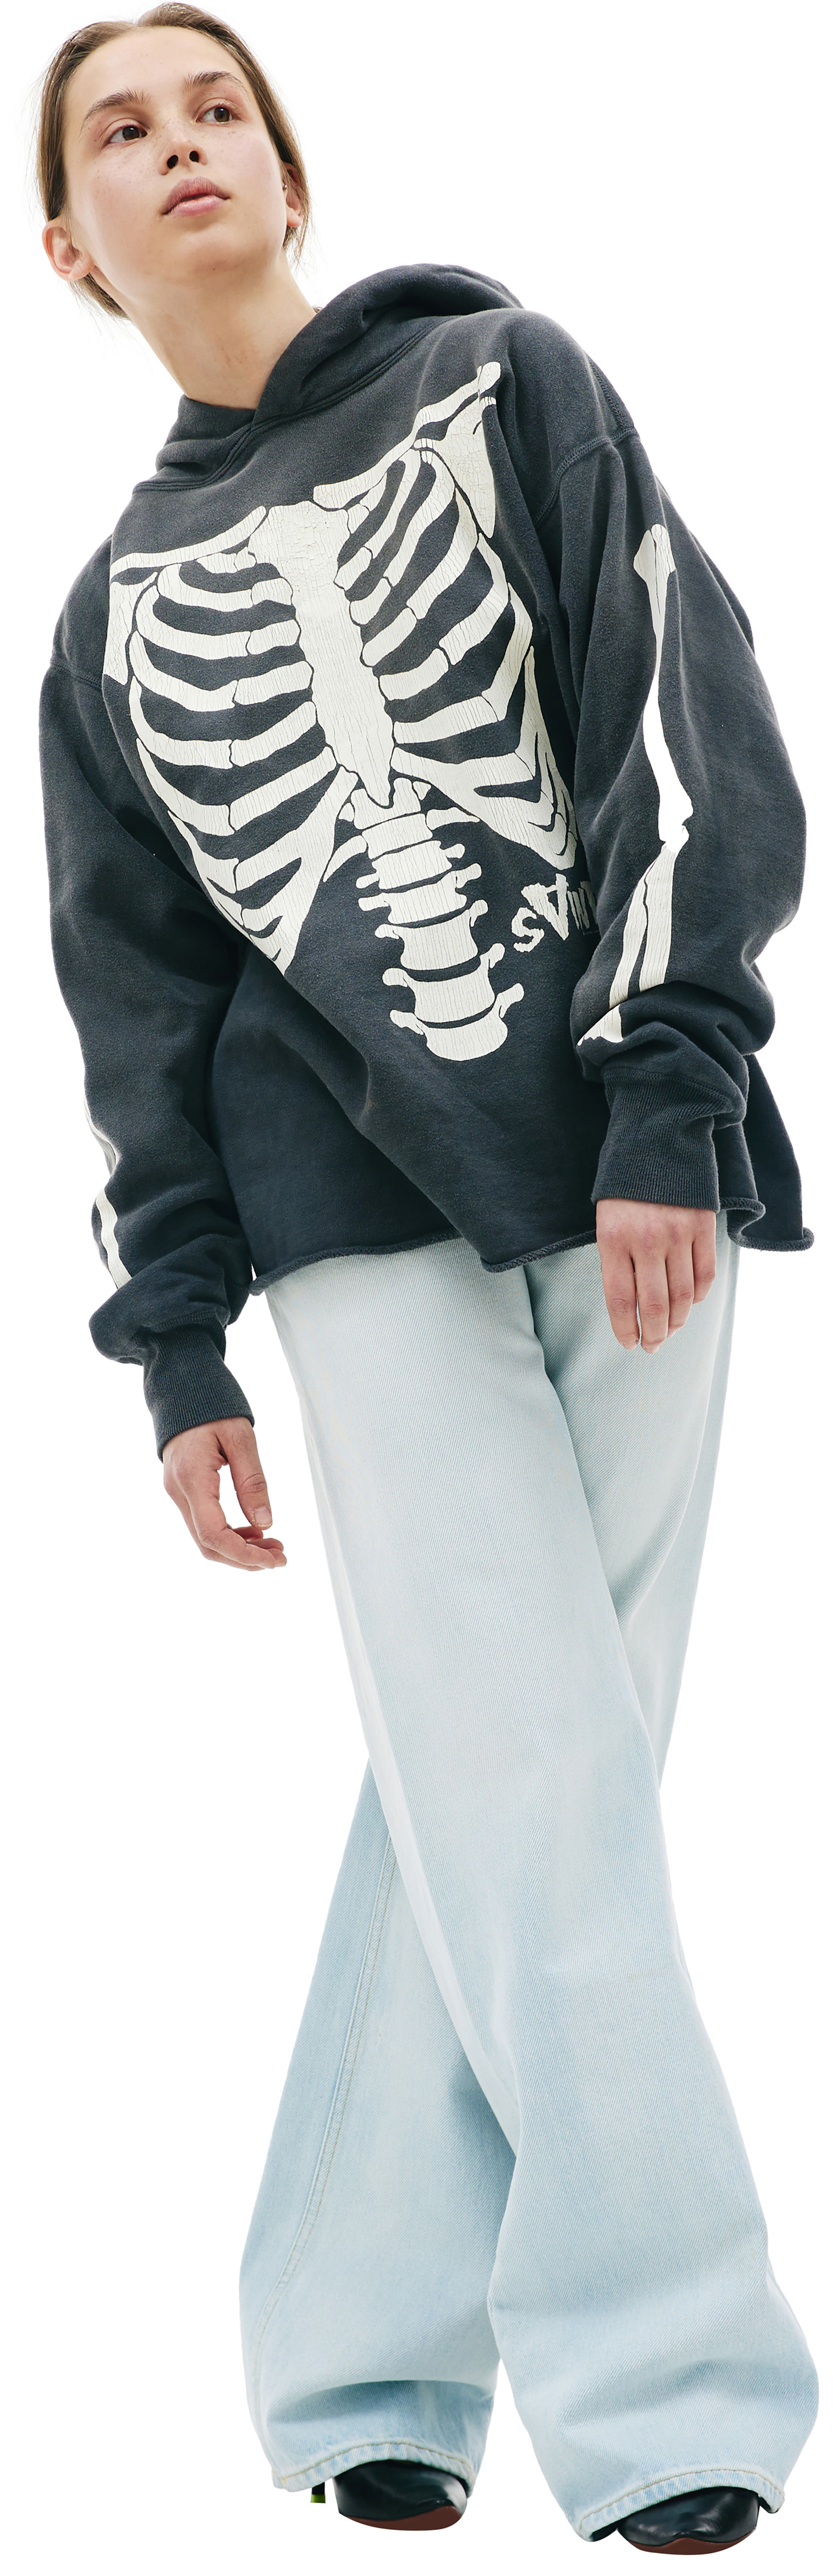 Saint Michael Bone printed hoodie